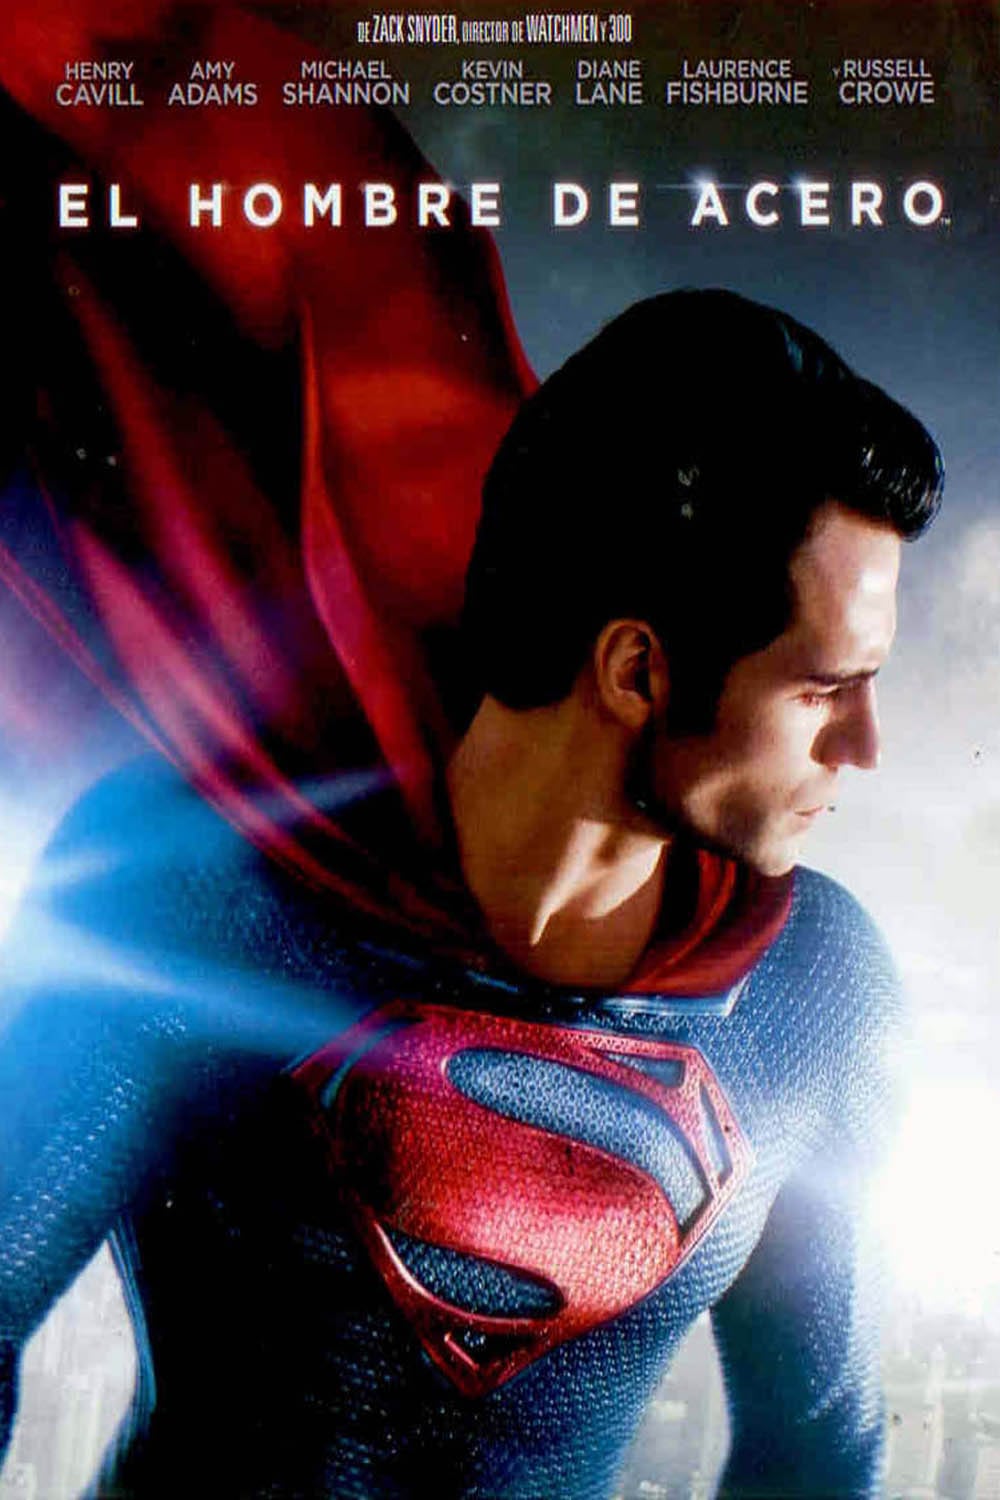 Ver Superman: El hombre de acero (2013) Online | PELISFORTE - El Hombre De Acero 2013 Pelicula Completa En Español